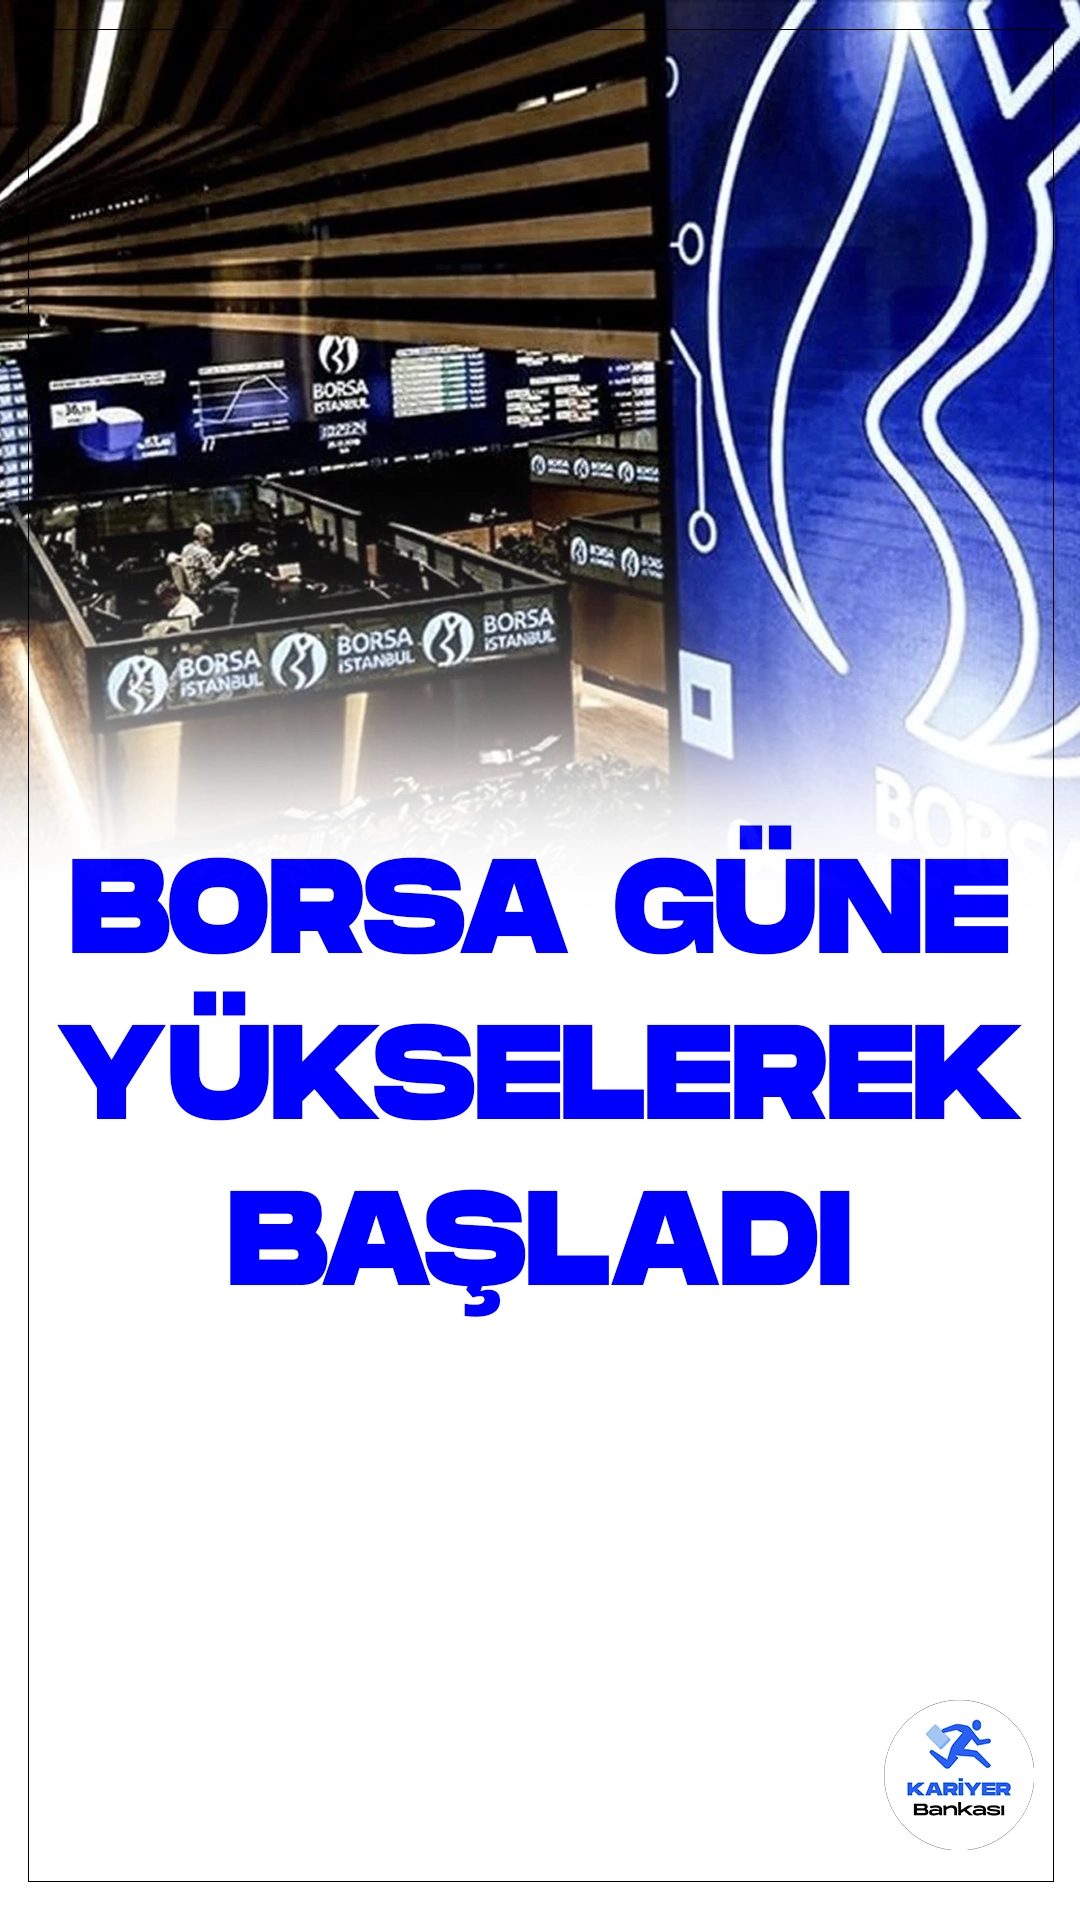 Borsa İstanbul'un Güçlü Açılışı: Borsa İstanbul'da haftanın ilk işlem gününe, BIST 100 endeksi %0,39'luk bir yükselişle başladı. Bu artışla birlikte endeks, 9.411,11 puana ulaşarak önceki kapanışın 36,91 puan üzerine çıktı.